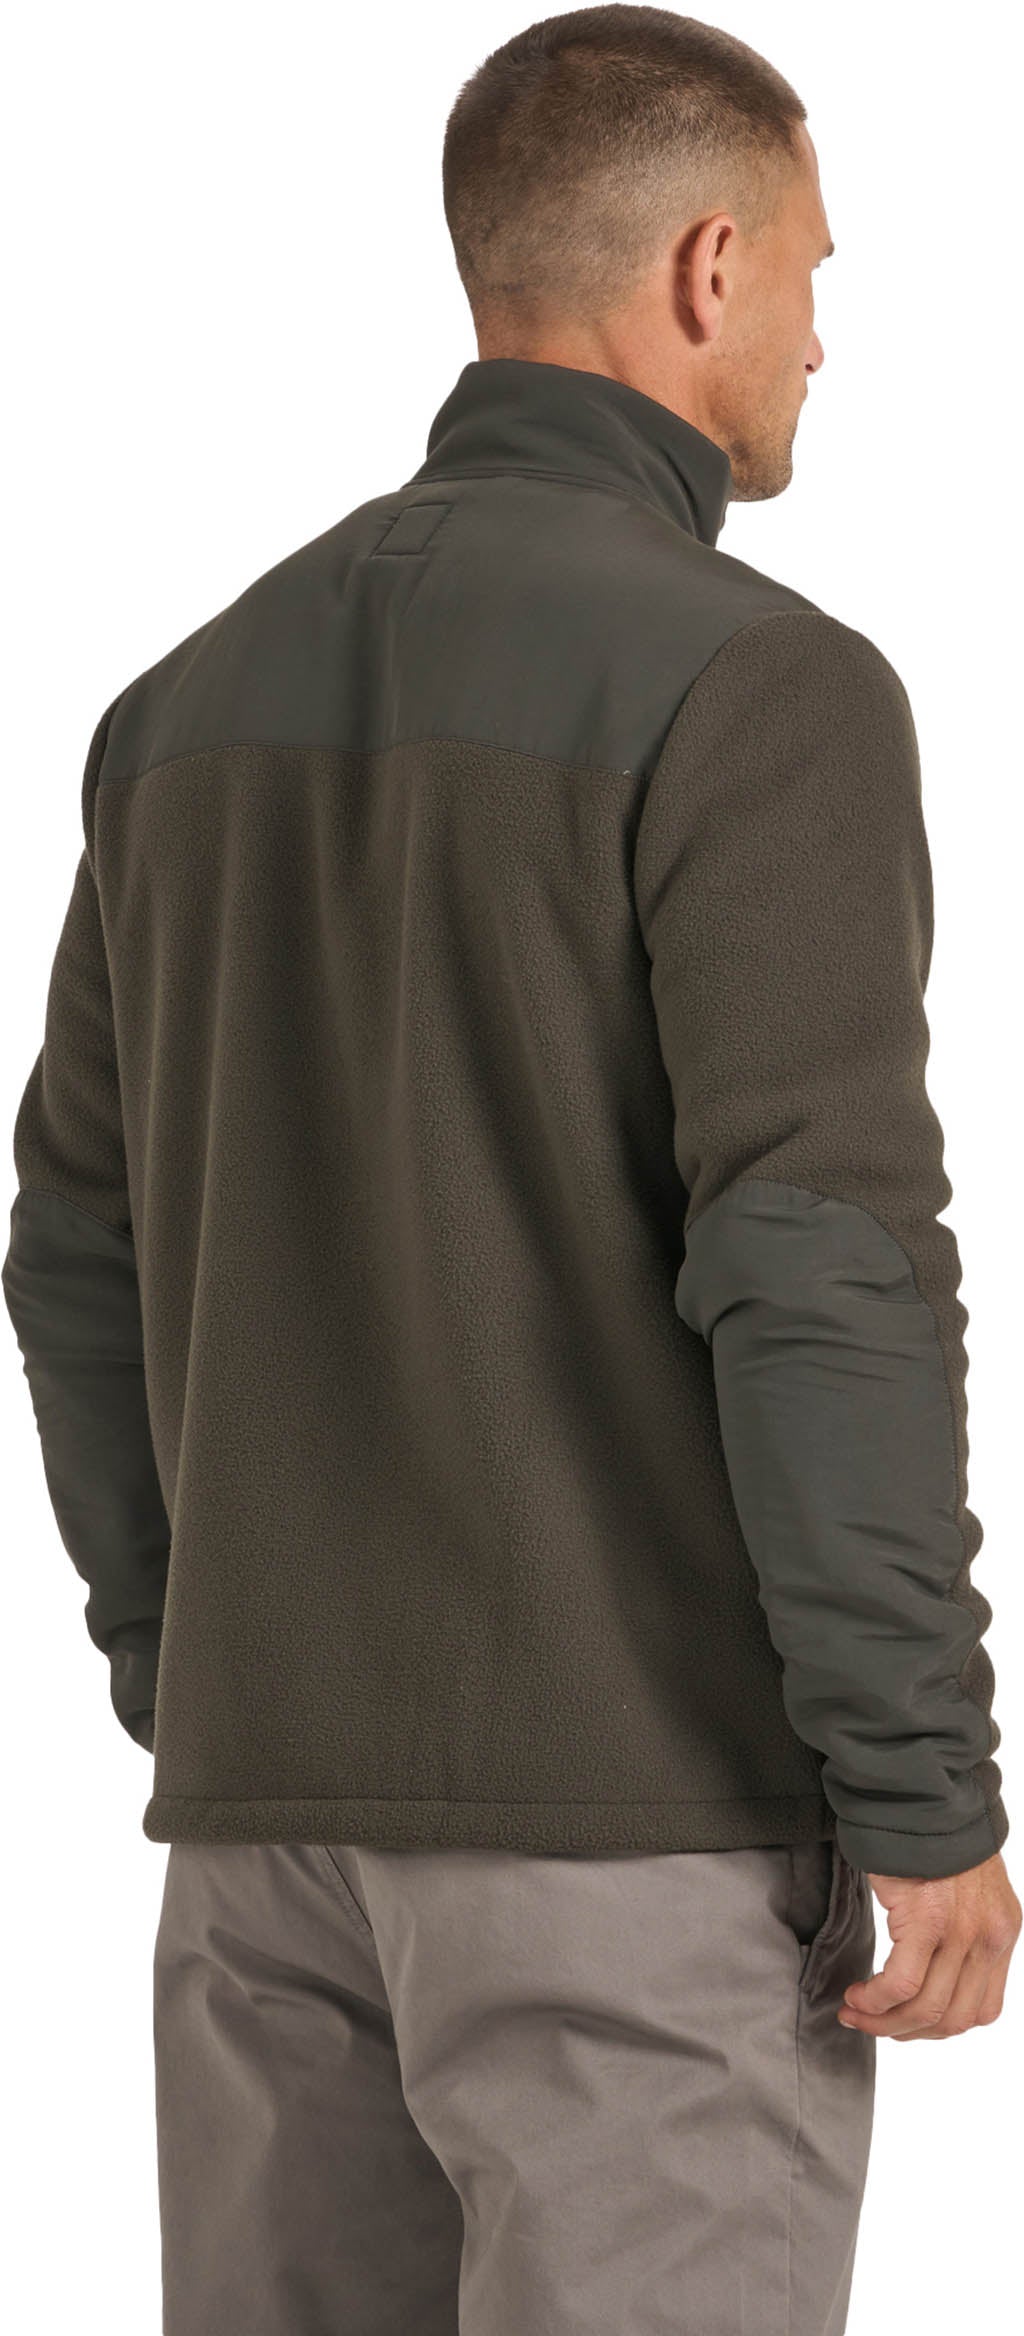 Vuori Morrow Full Zip Fleece Sweatshirt - Men's